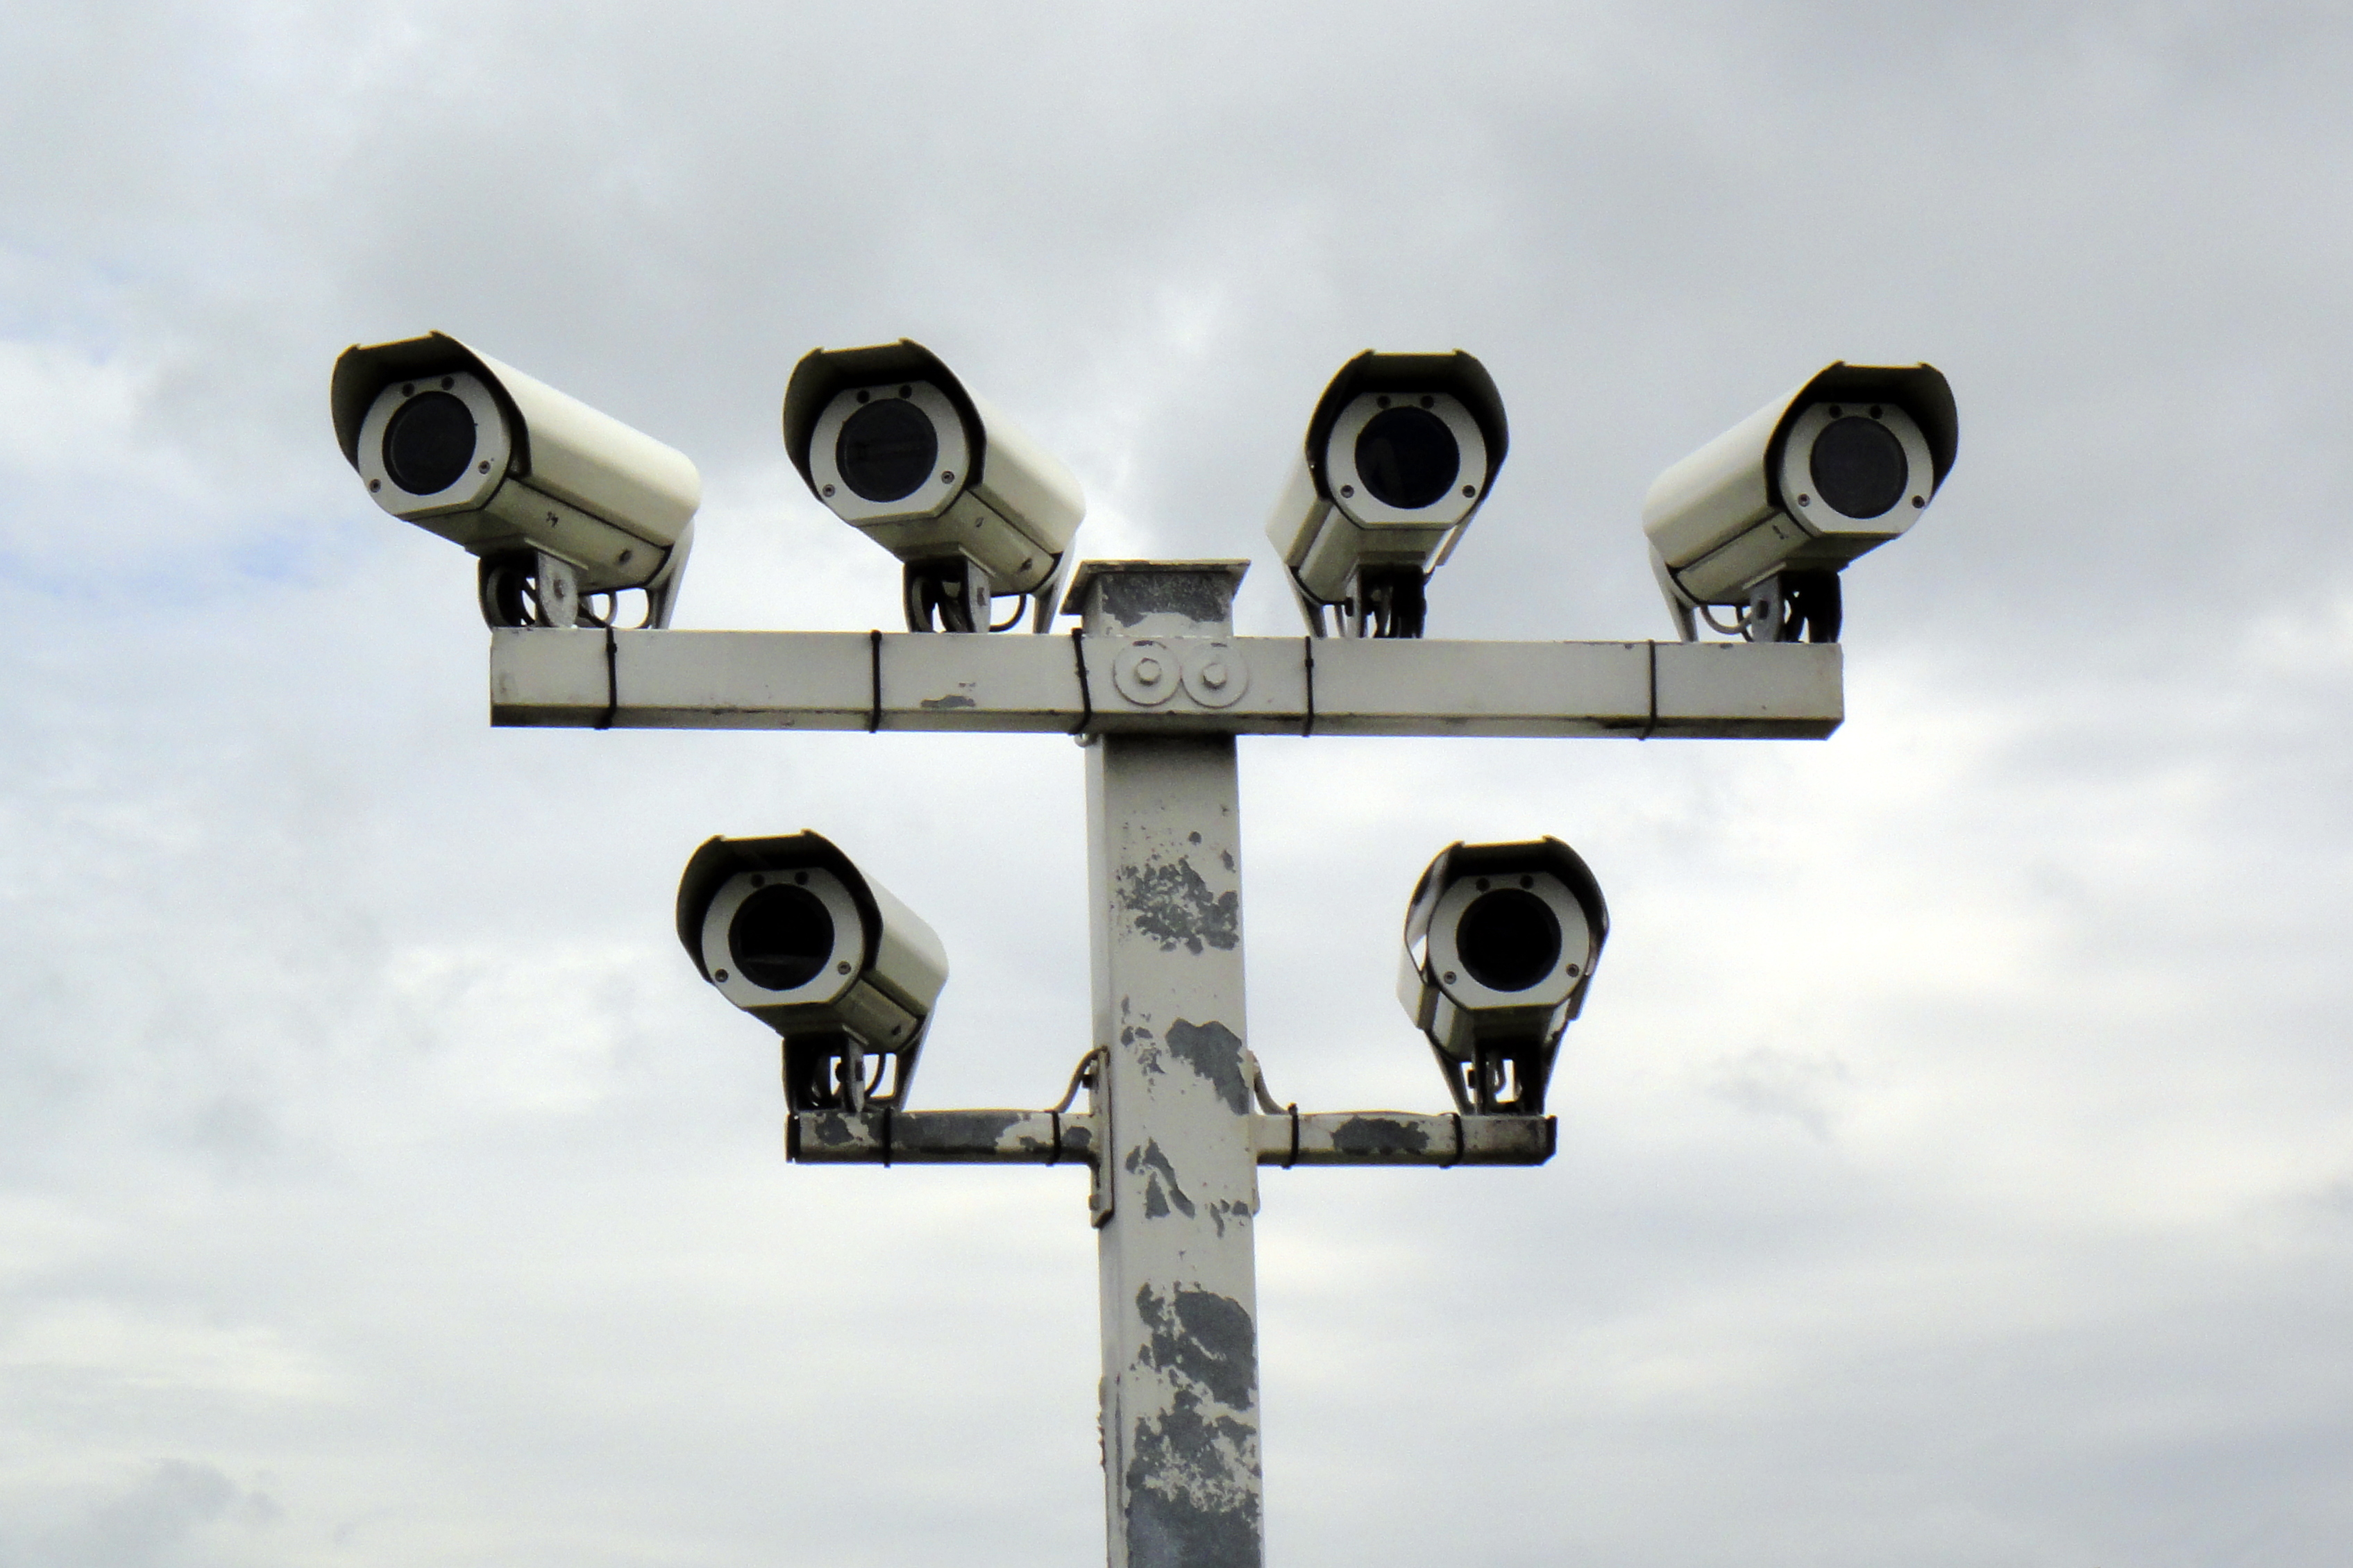 Die USA bauen die Überwachung des öffentlichen Raums "massiv" mit Hilfe von Kameras und Mikrofonen aus. Quelle: Wikipedia, Lizenz: CC BY 3.0